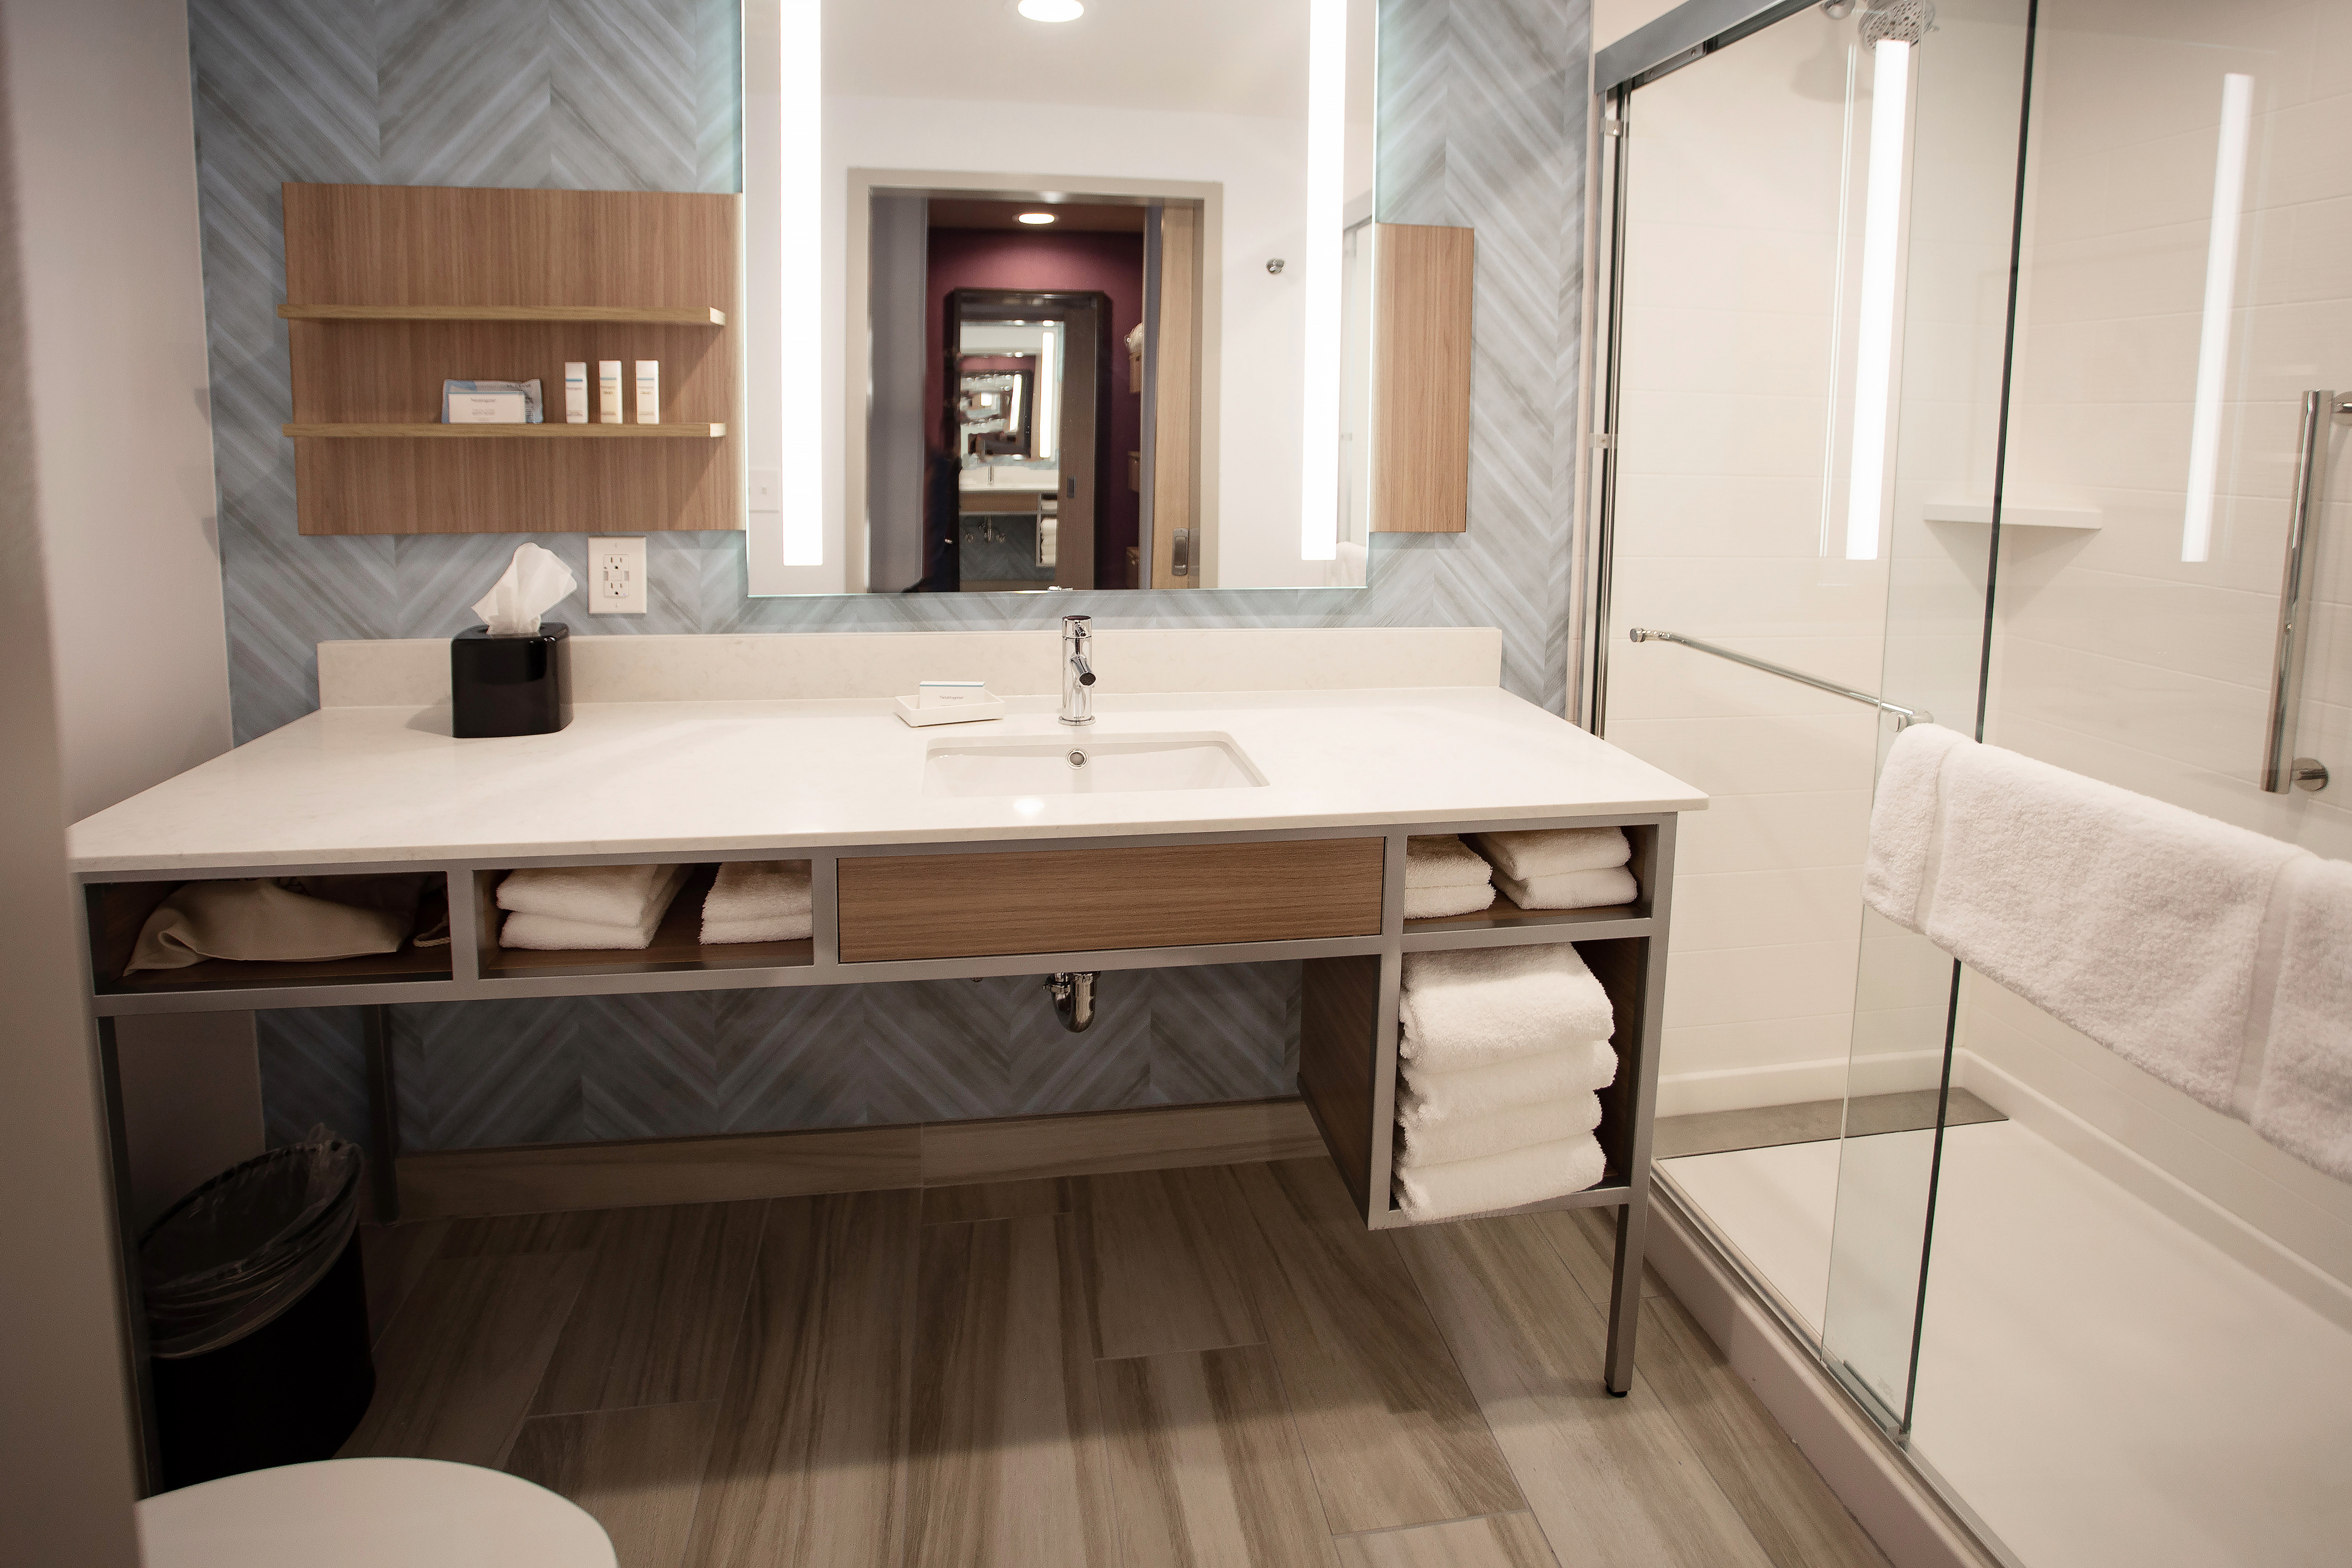 Bathroom Vanity Area and View of Glassdoor Shower